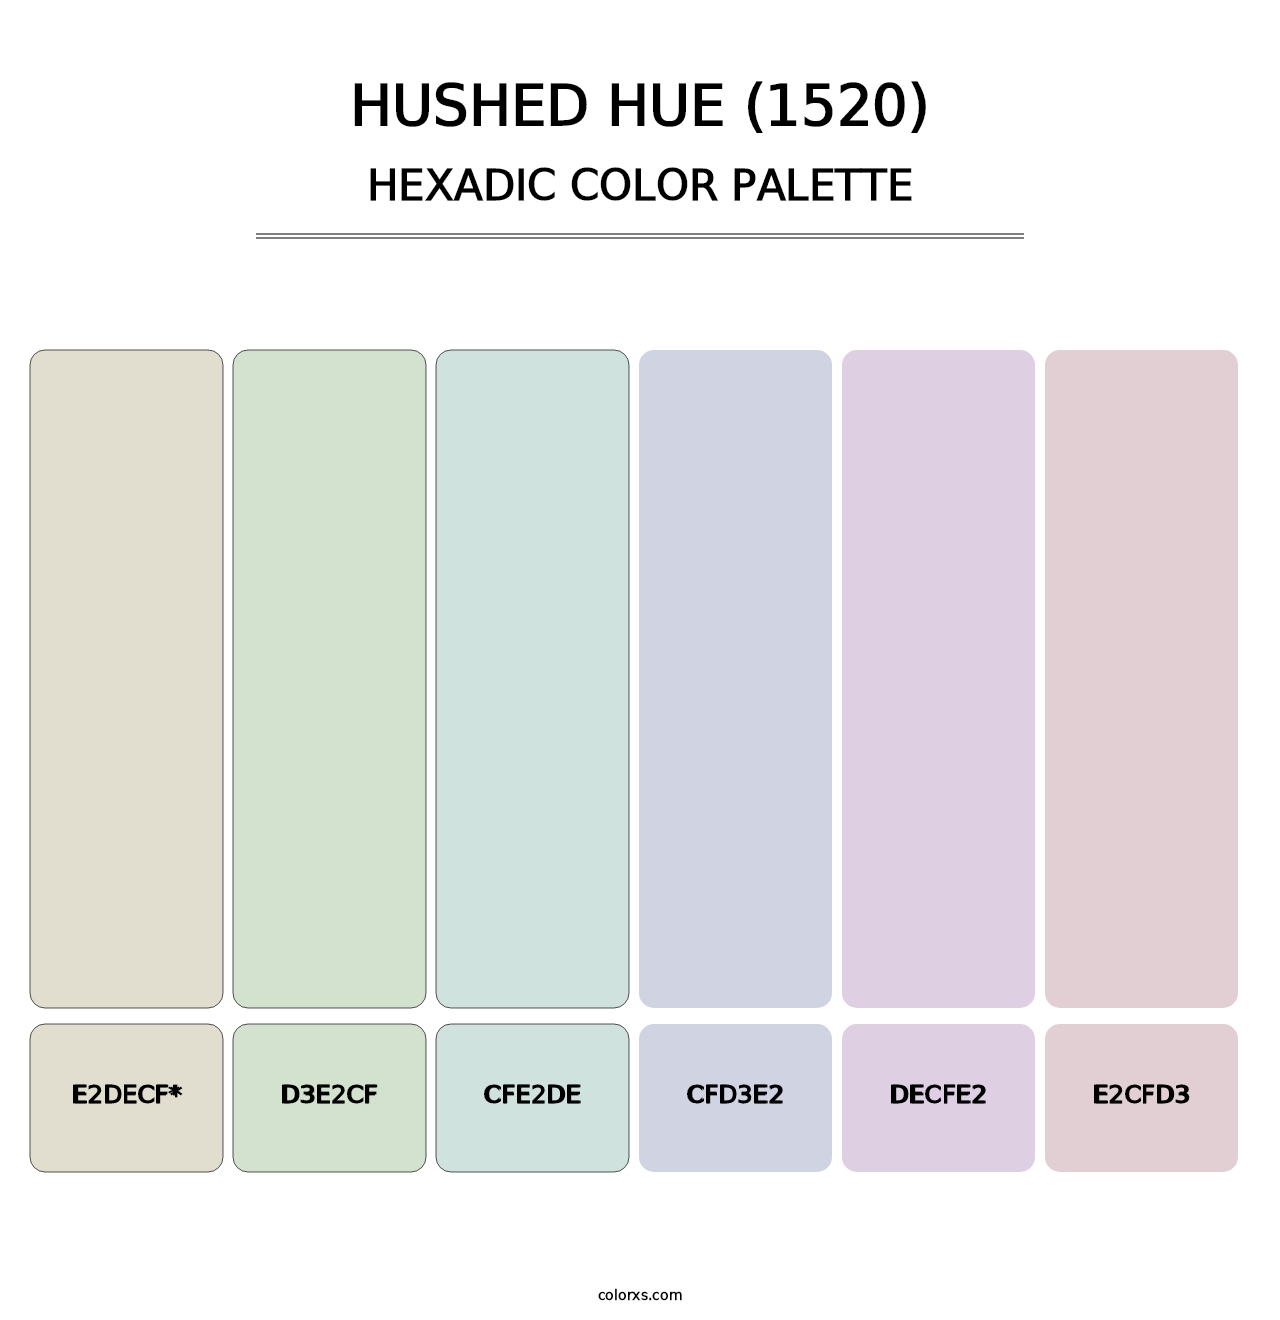 Hushed Hue (1520) - Hexadic Color Palette